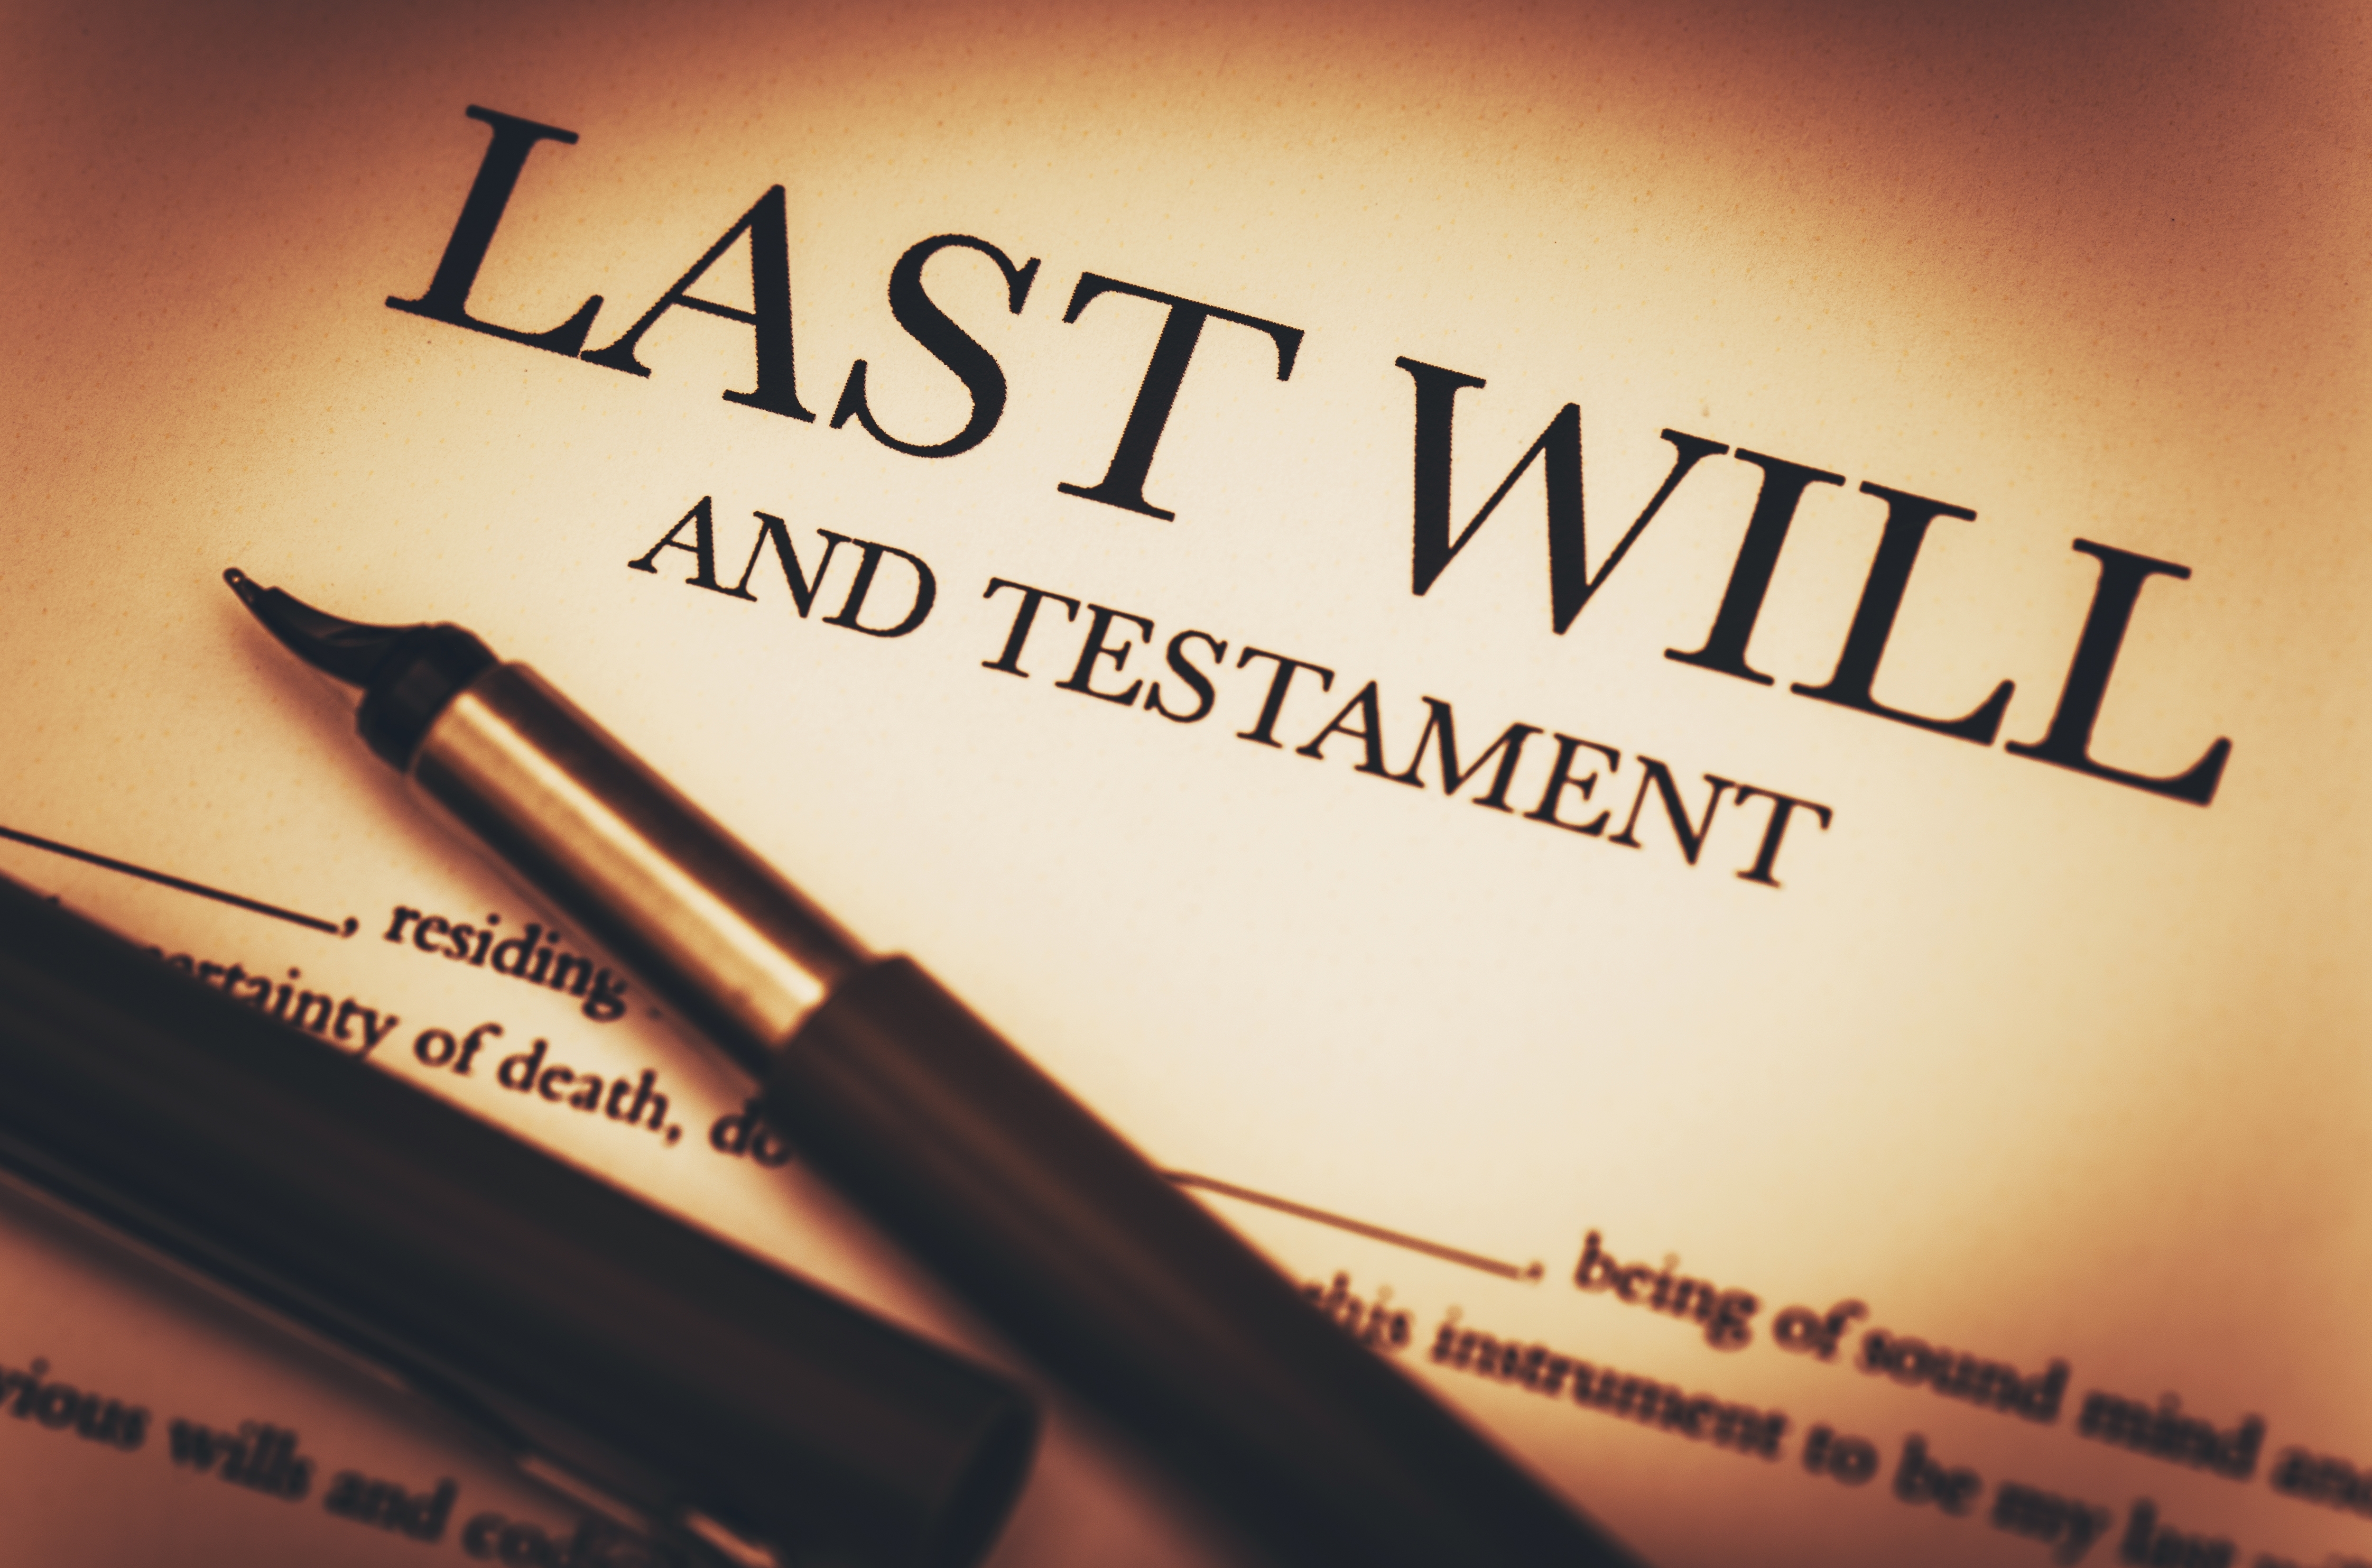 Un document portant l'en-tête "Dernières volontés et testament" | Source : Shutterstock